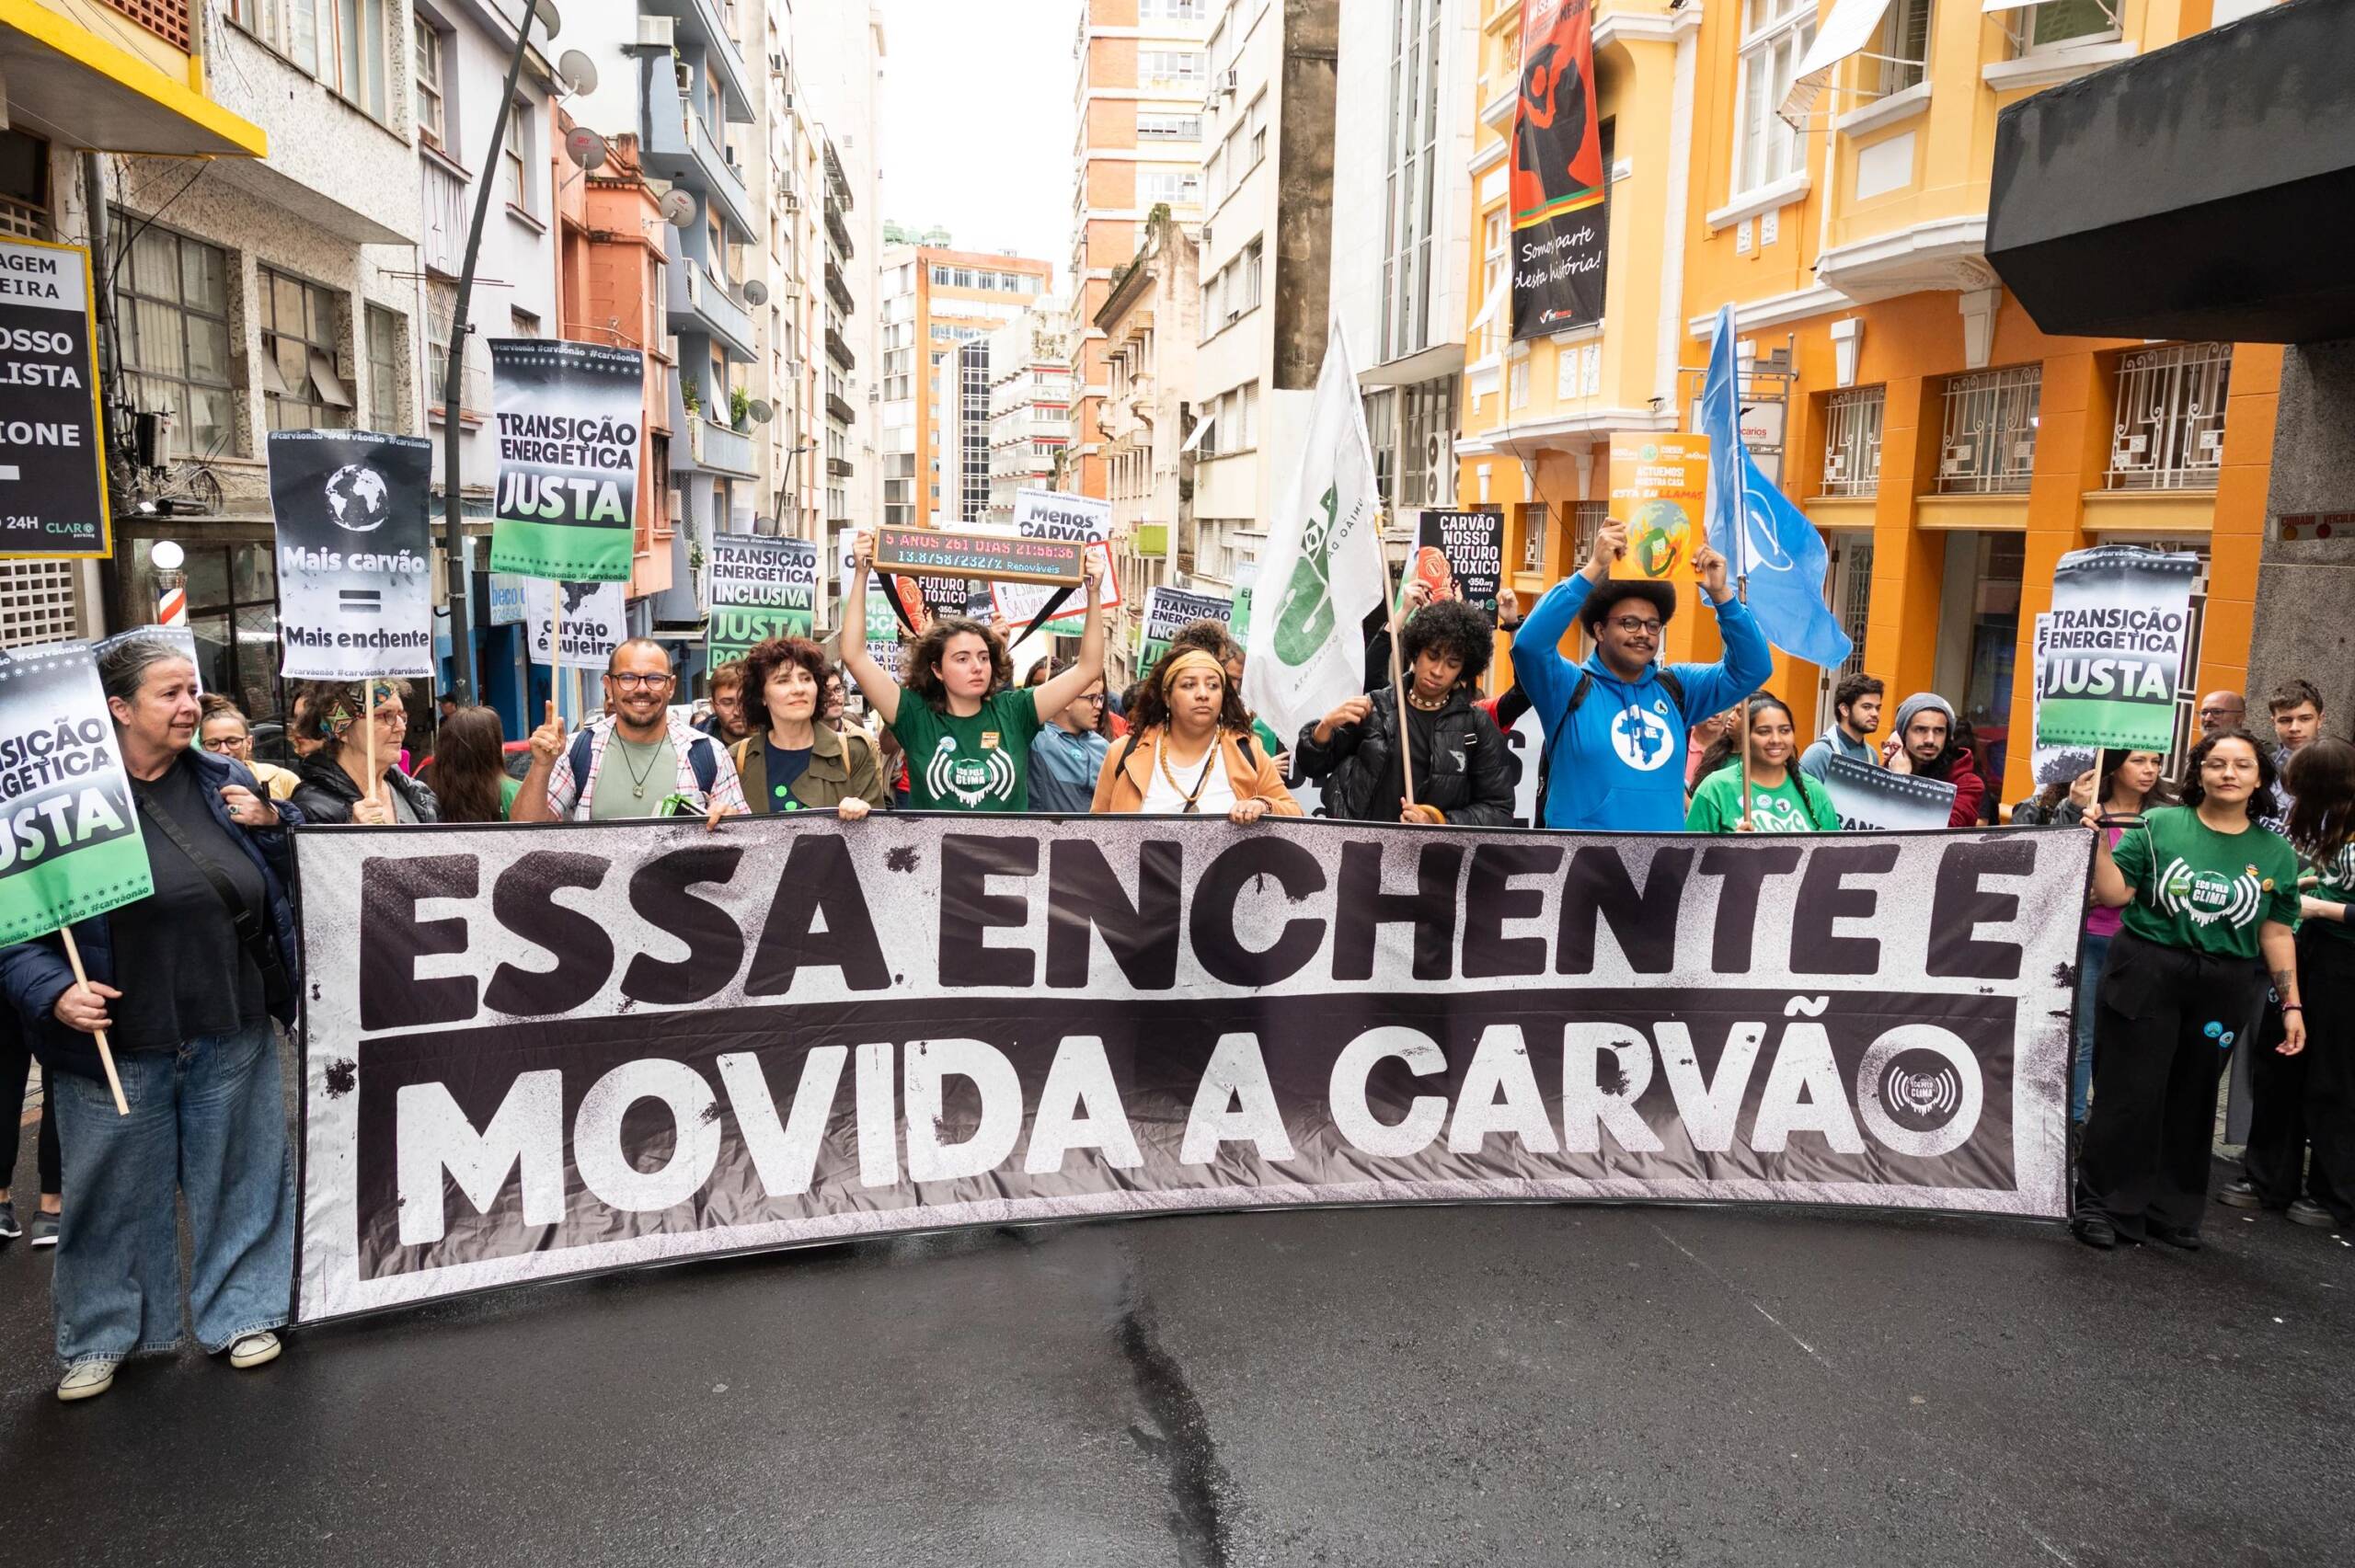 Porto Alegre, Brésil, le 3 novembre : des activistes manifestent avec une banderole pour demander au gouvernement local de faire passer un « décret d’urgence climatique ». Le sud du Brésil a récemment été frappé par trois cyclones tropicaux qui ont fait des dizaines de victimes. Crédit photo : Andrea Graiz